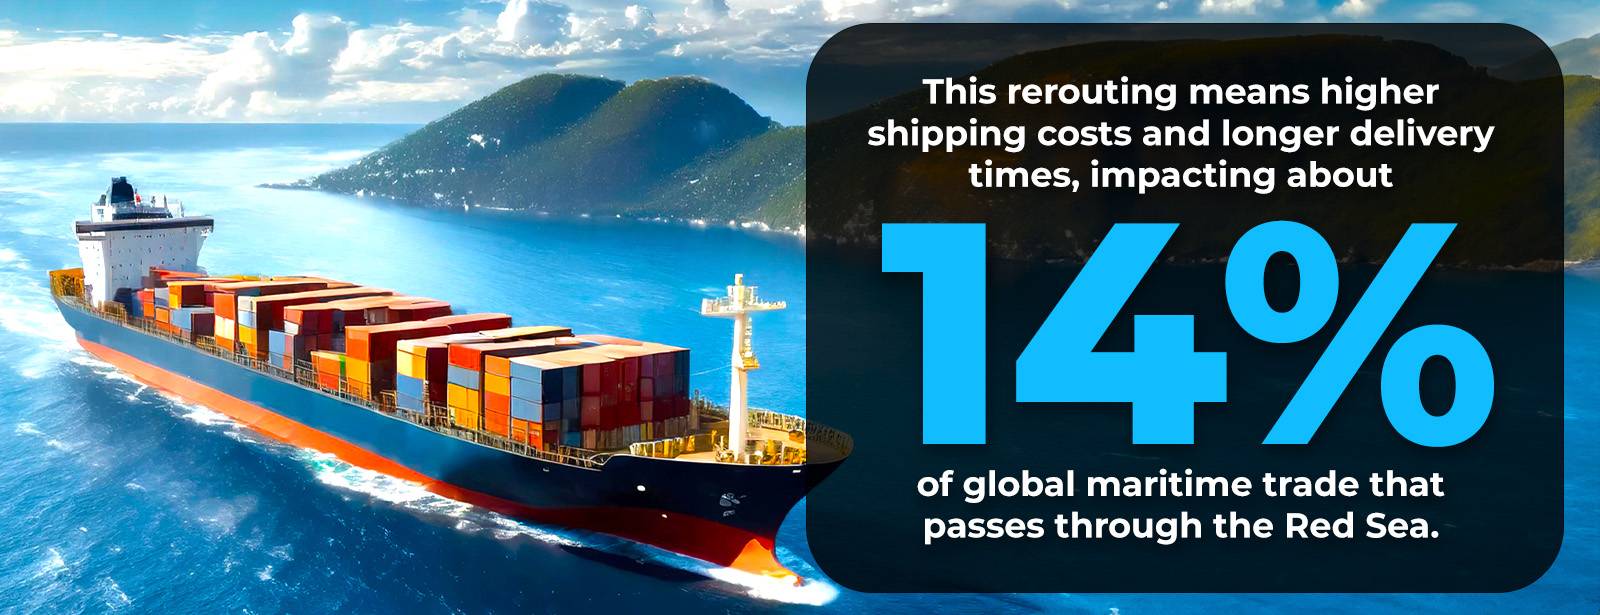 تأثر 14% من التجارة العالمية بالطرق الأطول بسبب هجمات البحر الأحمر